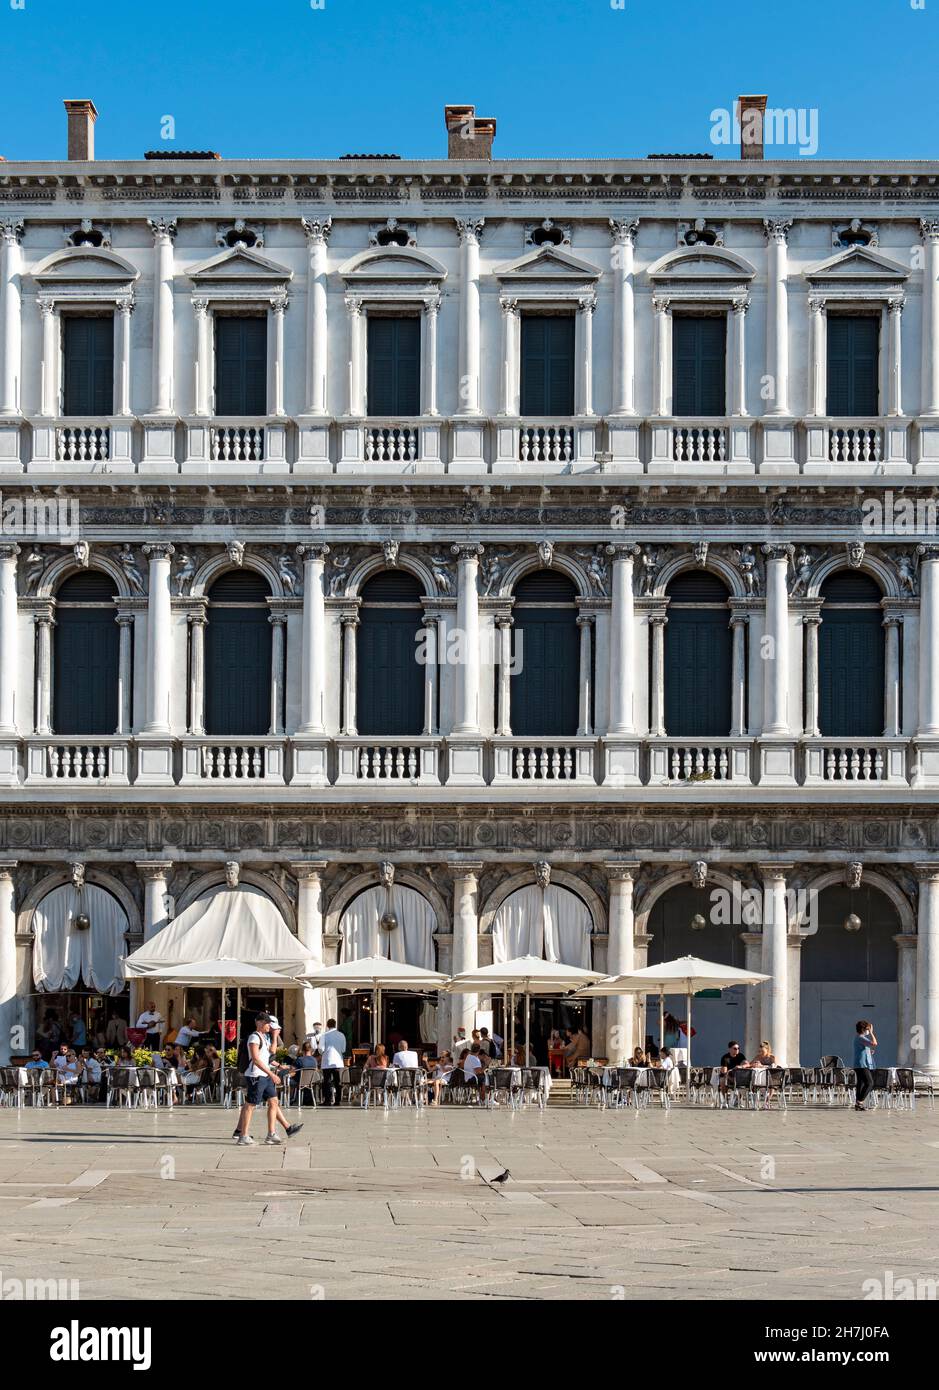 Bâtiment Procuratie Nuove, Piazza San Marco (place Saint-Marc), Venise, Italie Banque D'Images